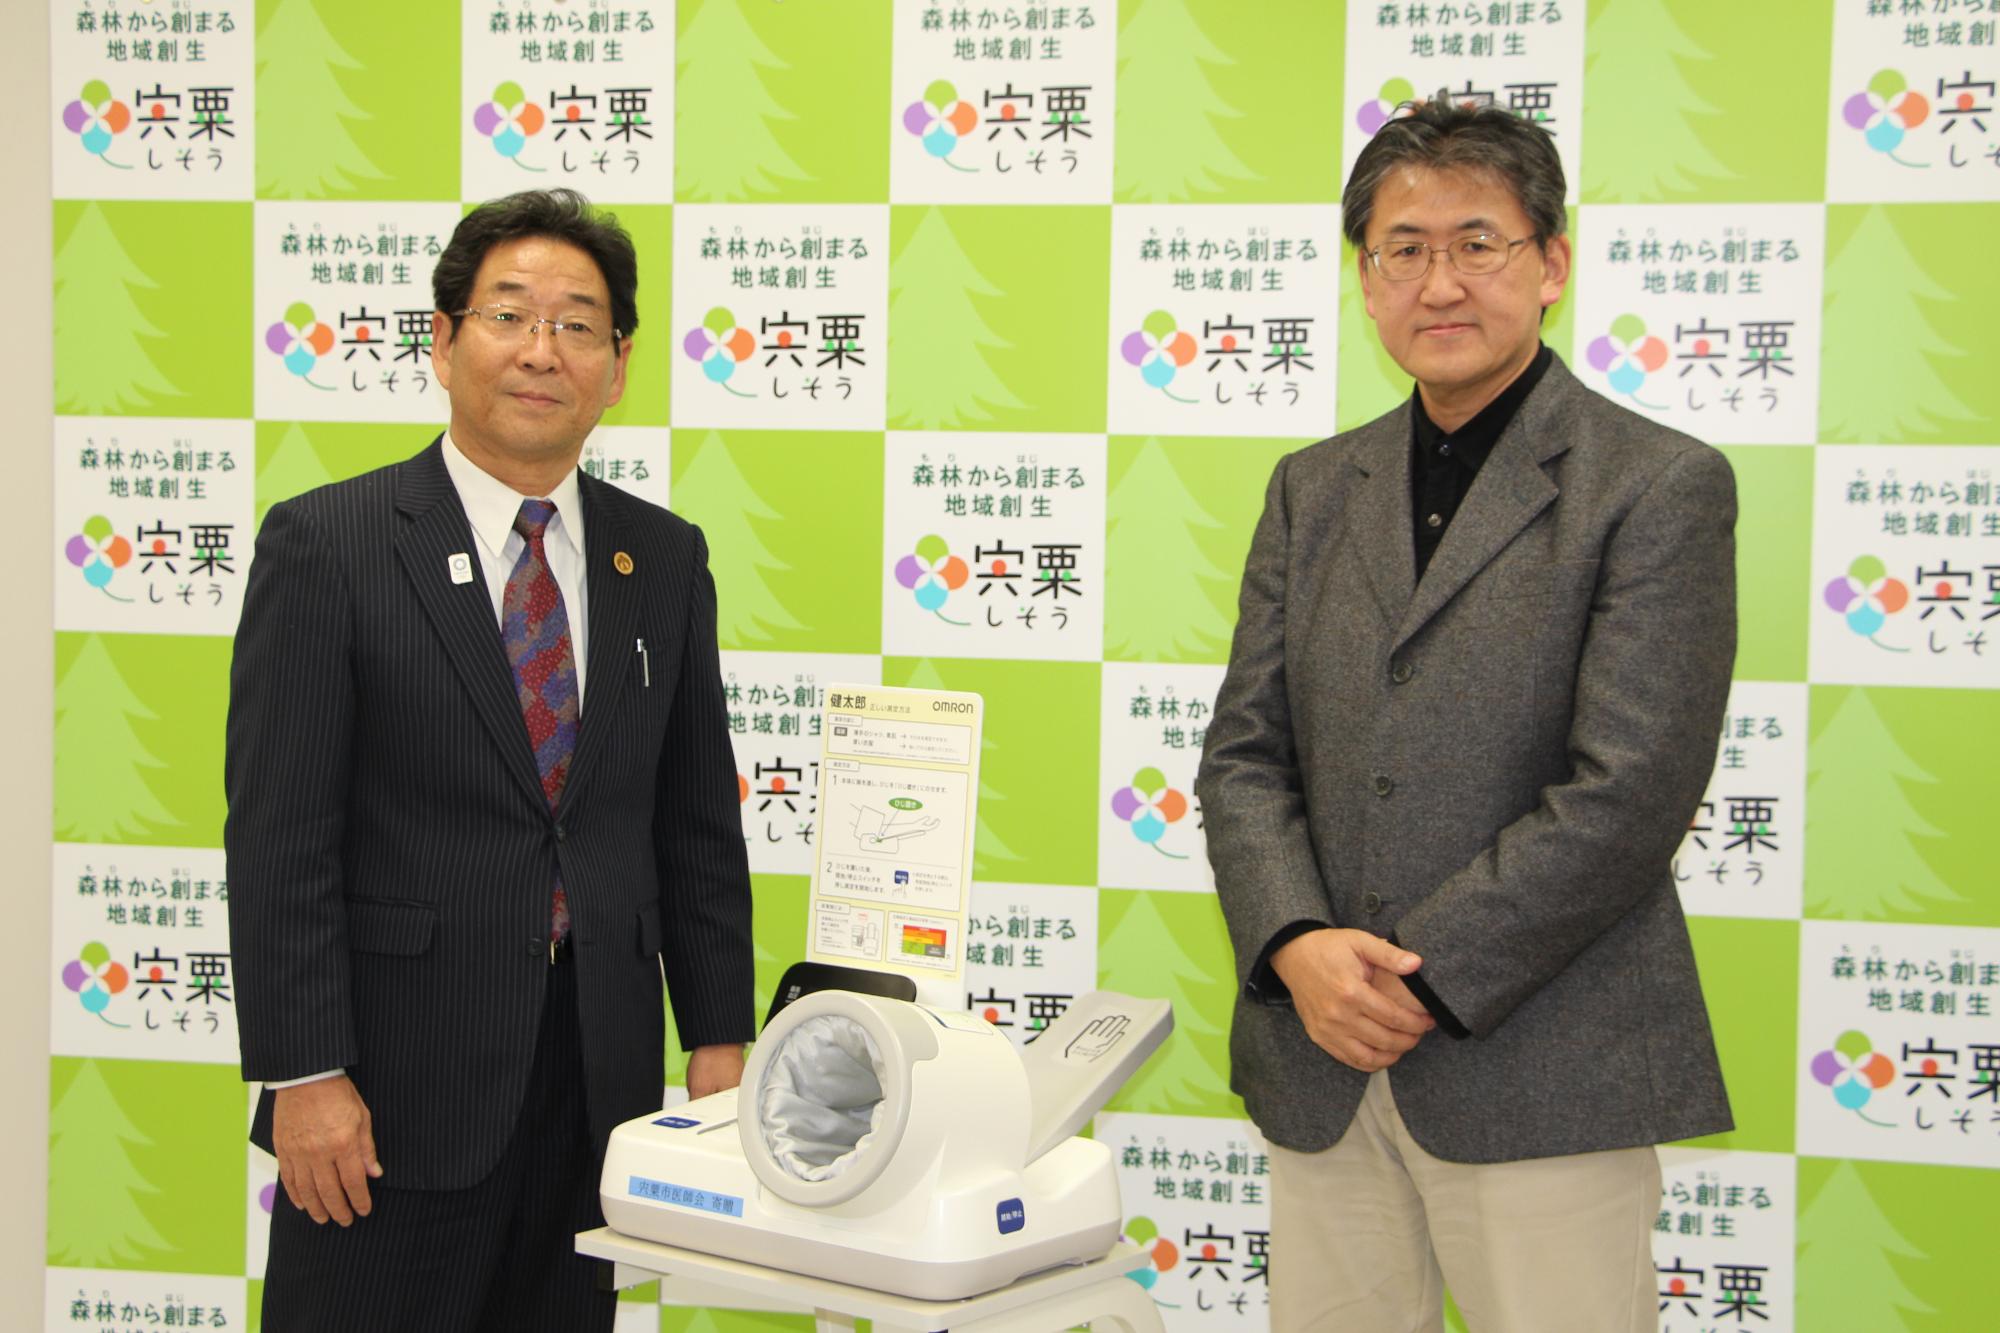 贈呈された血圧計と写る宍粟市医師会代表と市長の記念写真